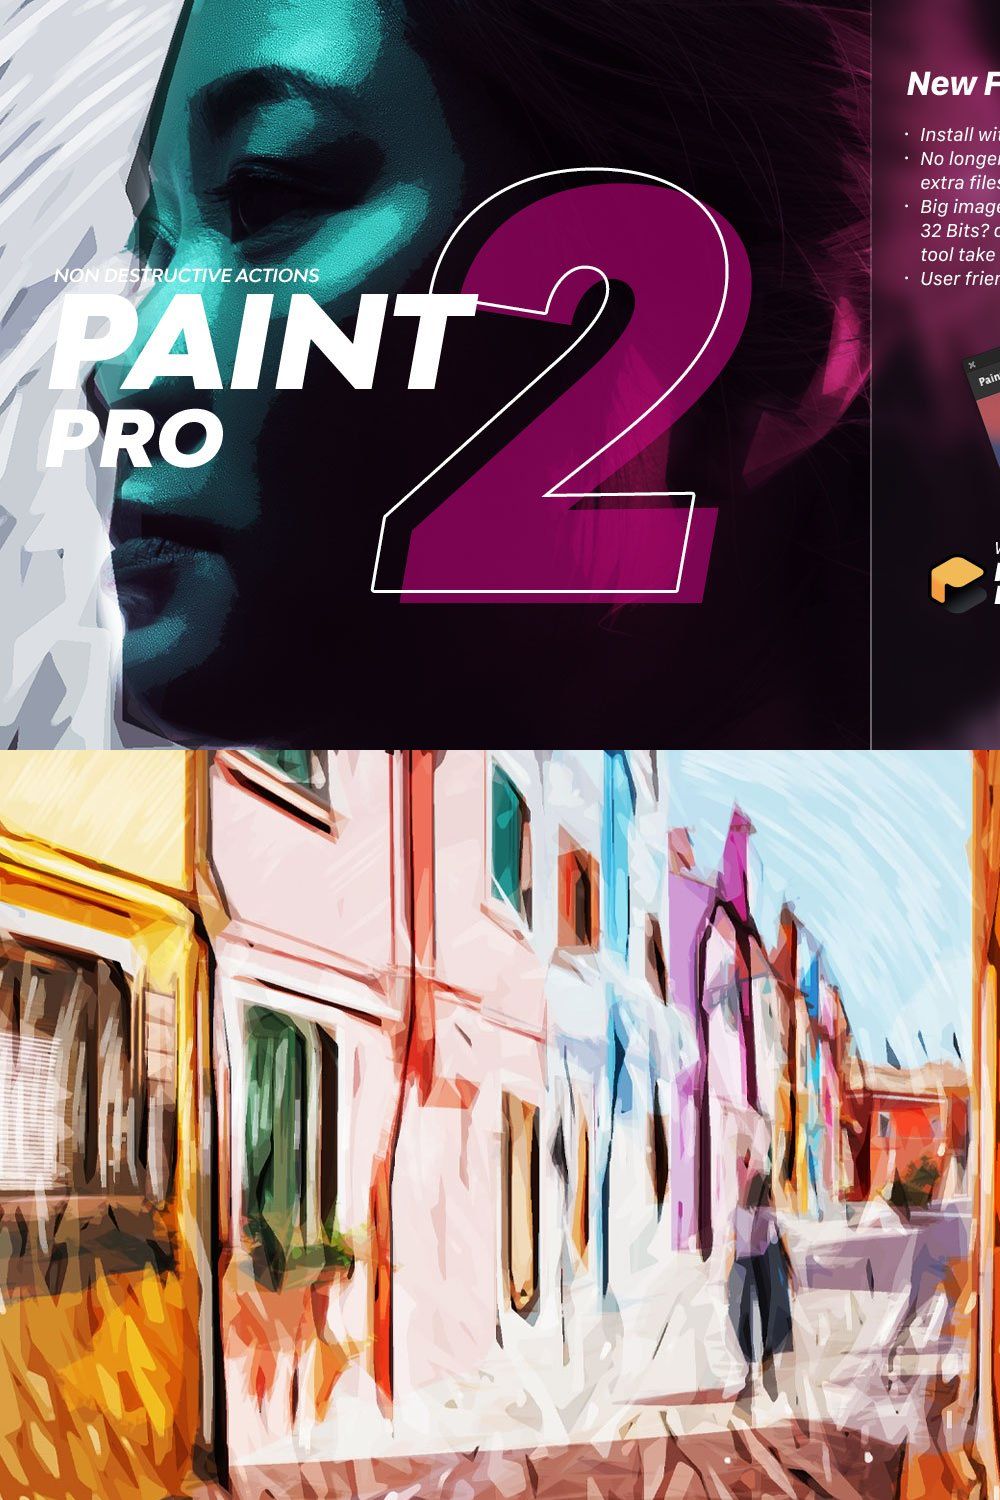 PainterBox | Painter Pro 2 pinterest preview image.